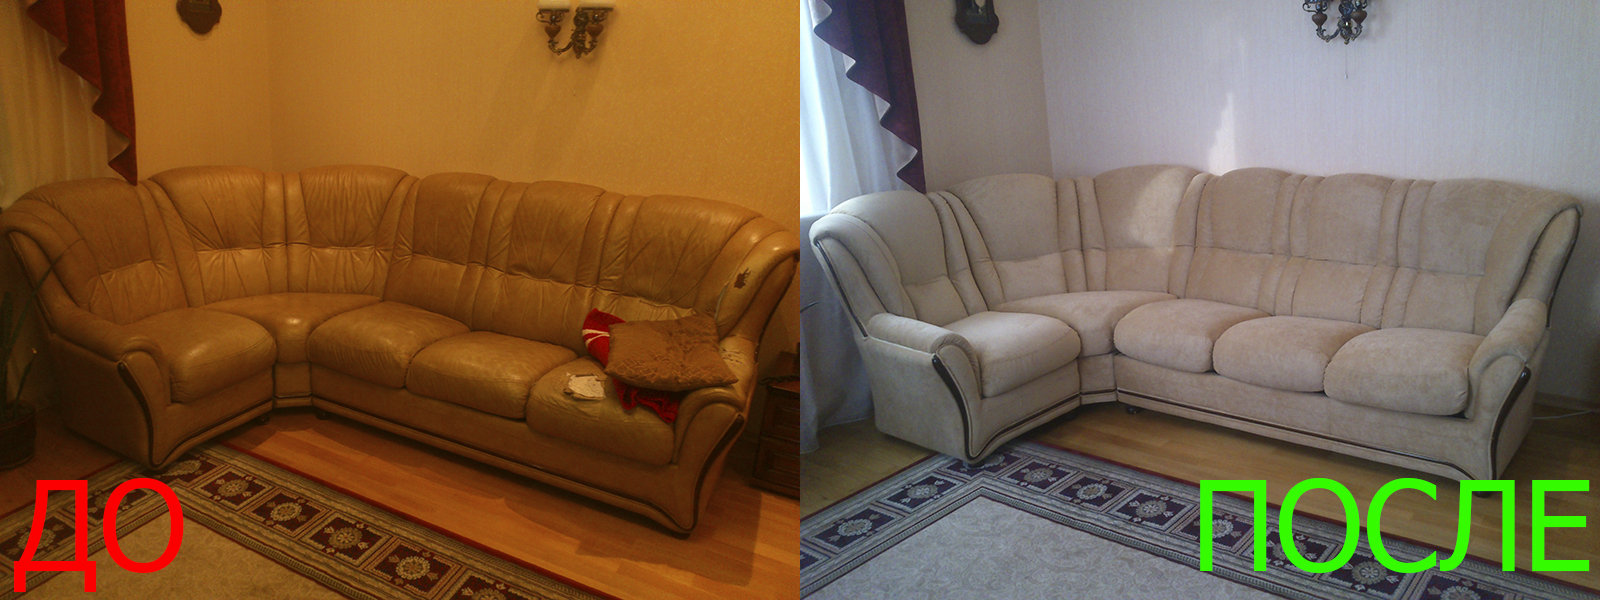 Перетяжка углового дивана в Краснодаре разумные цены на услуги, опытные специалисты